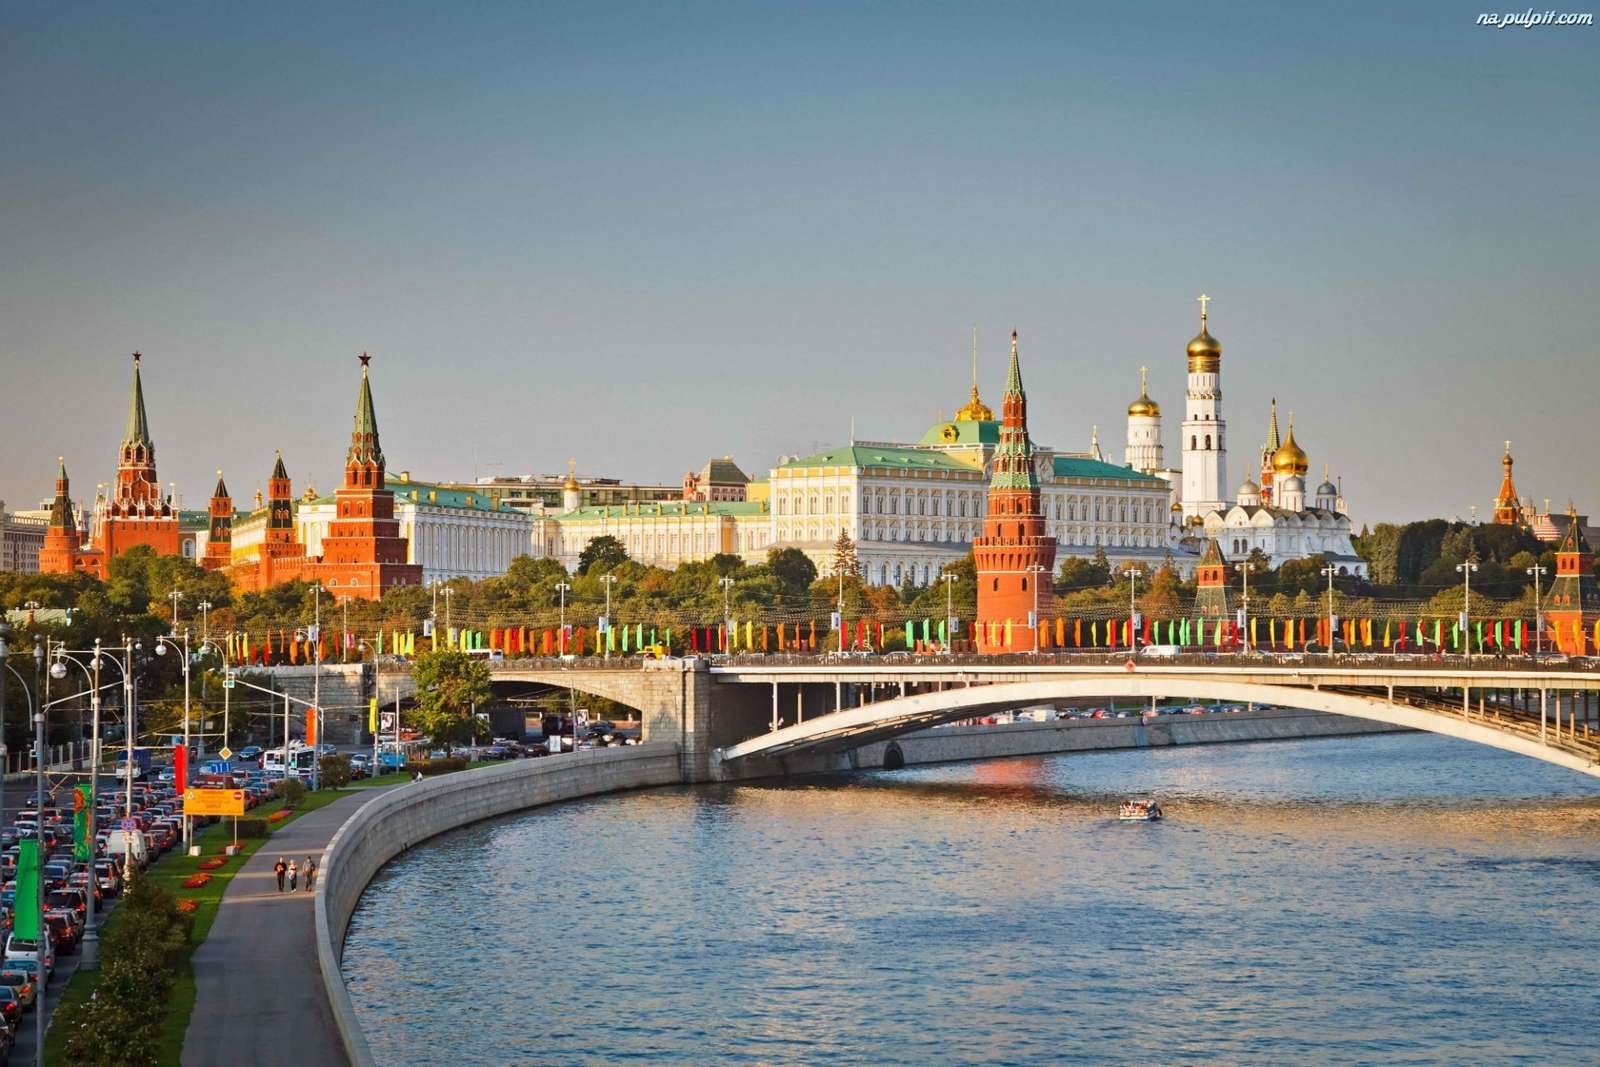 Moskva panorama. pussel på nätet